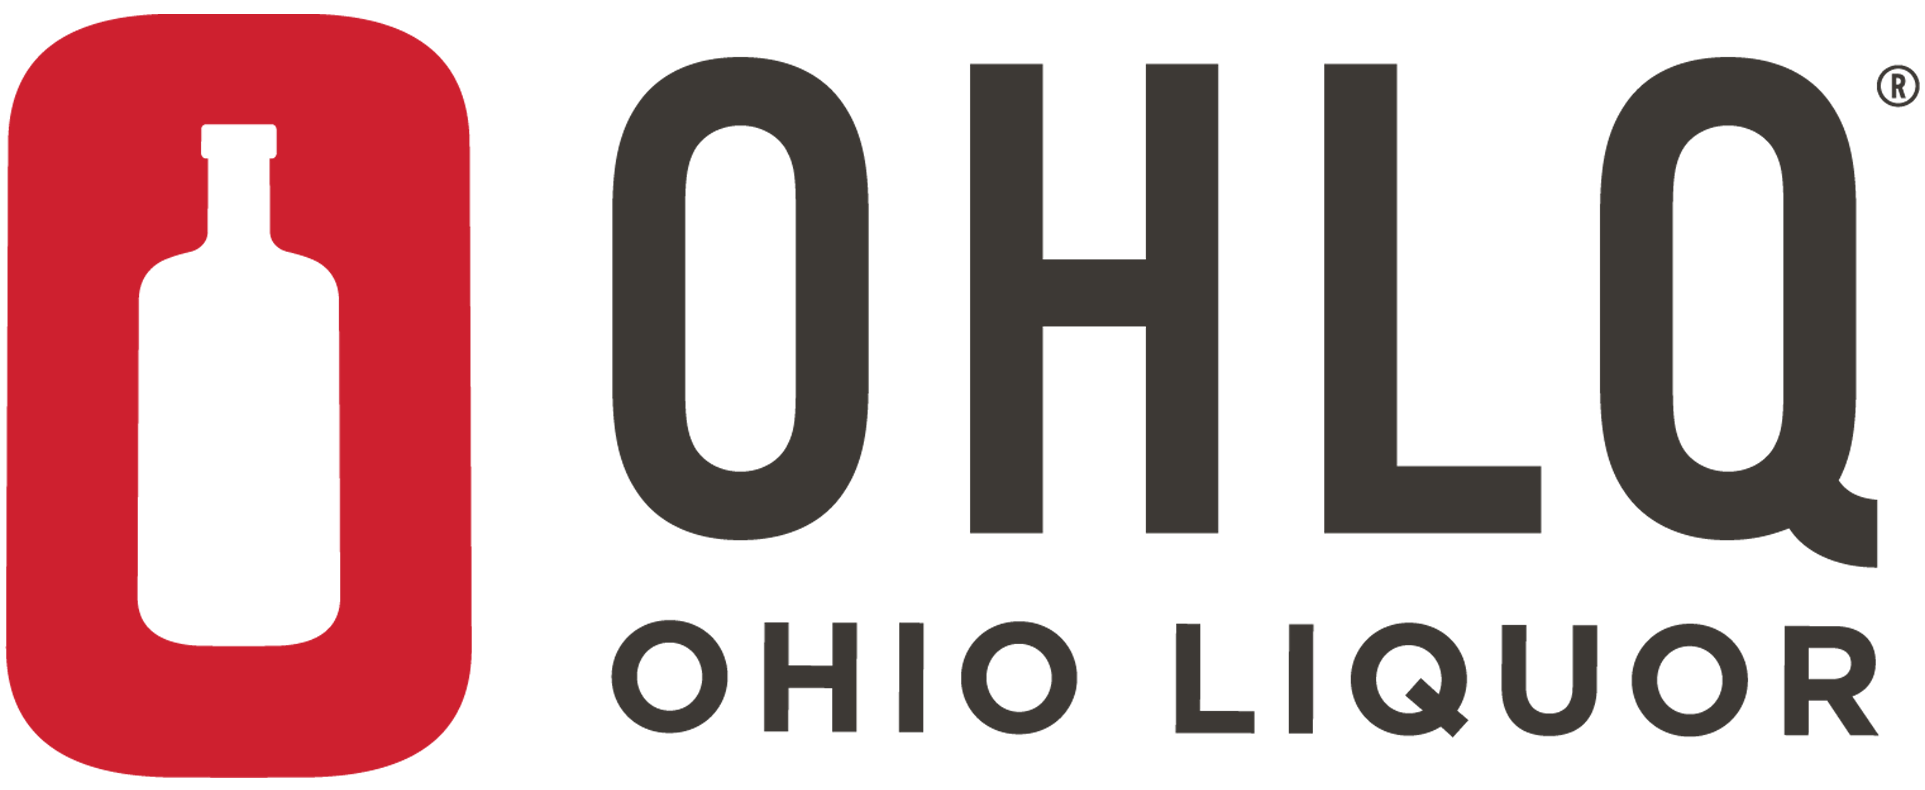 Ohio Liquor